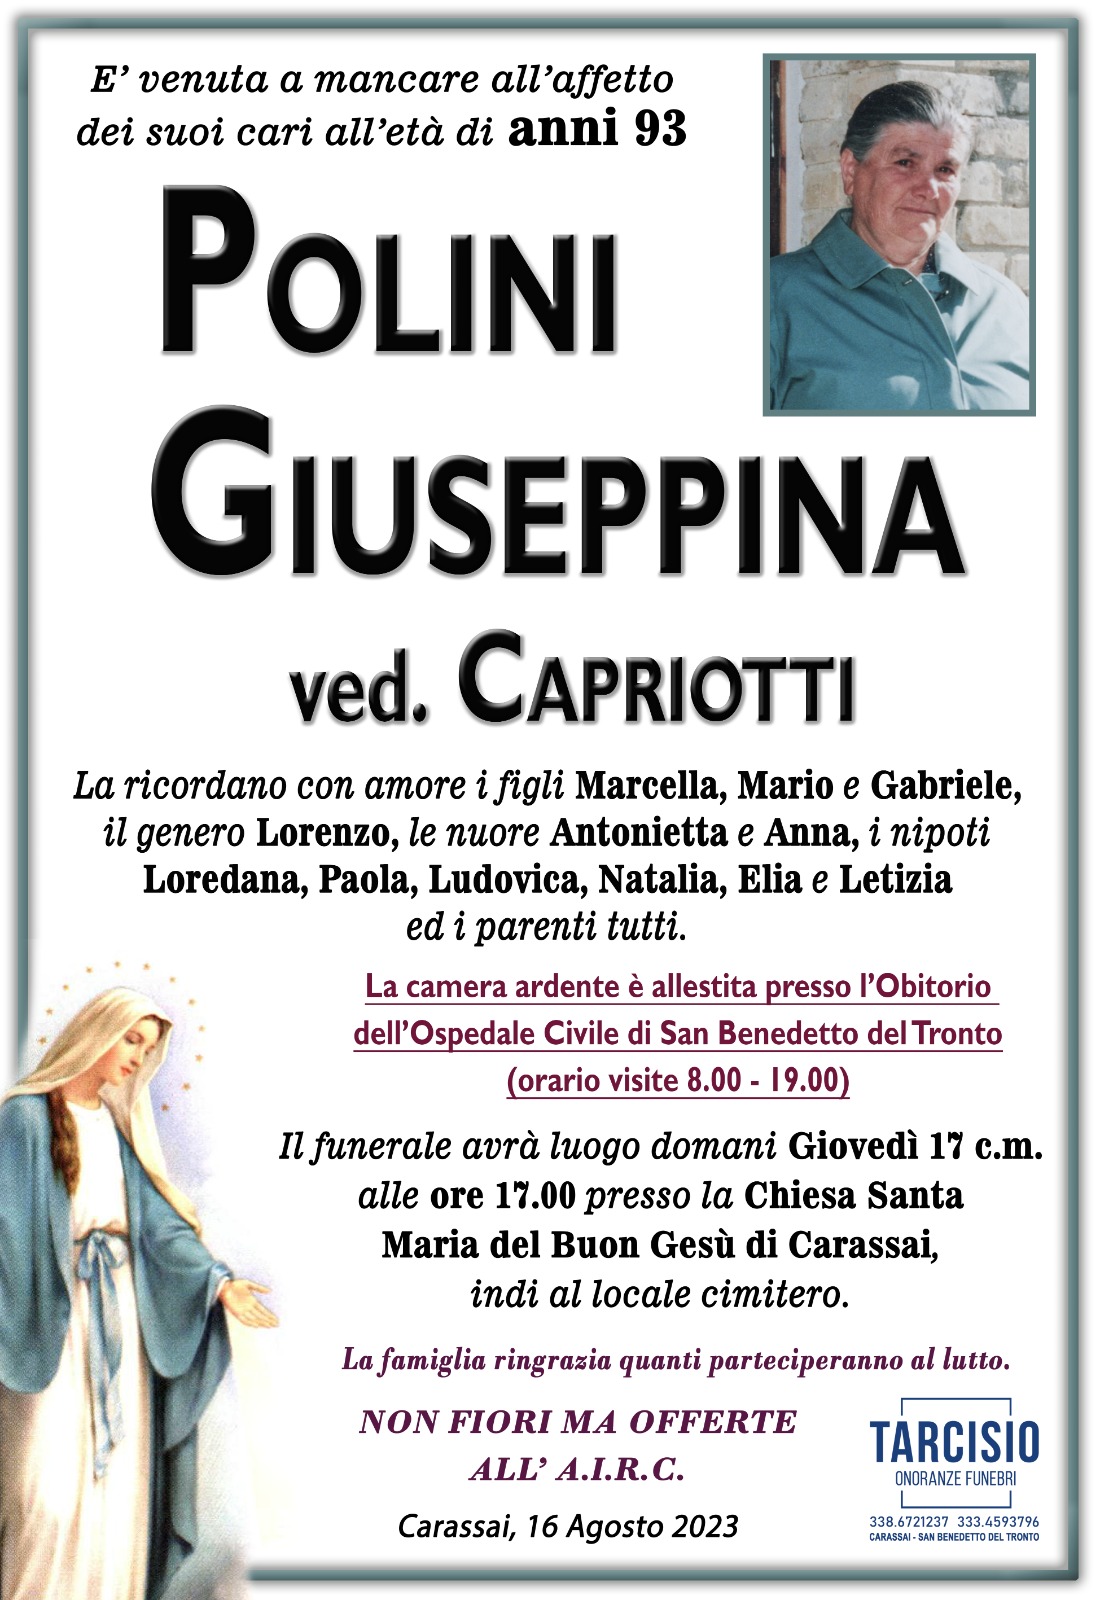 Giuseppina Polini